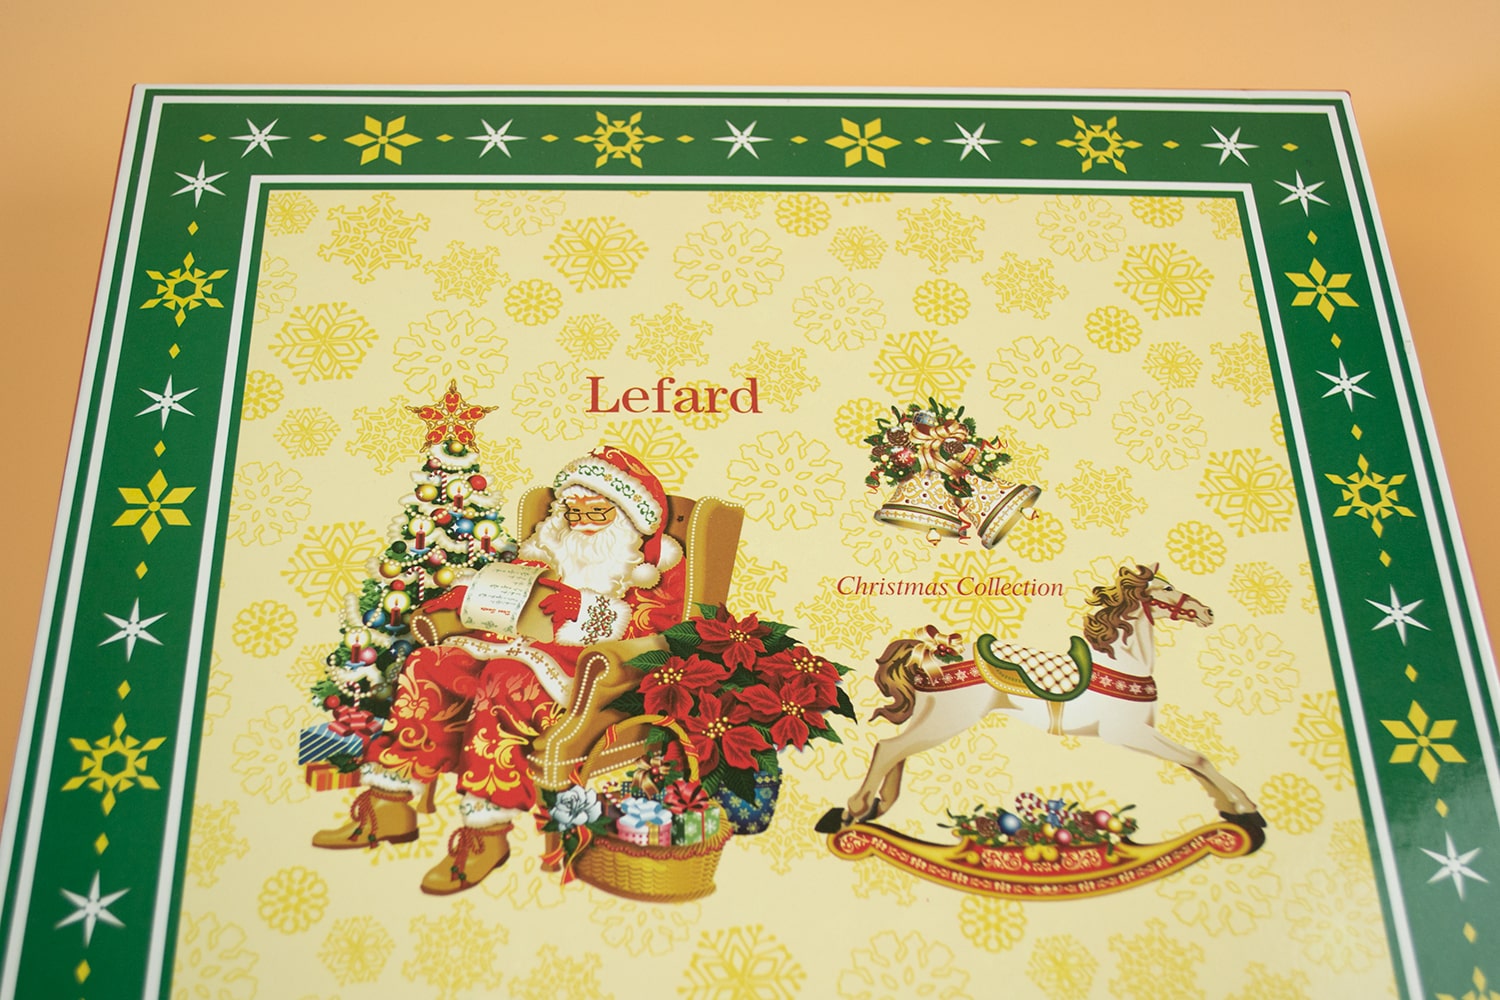 Lefard Christmas Collection